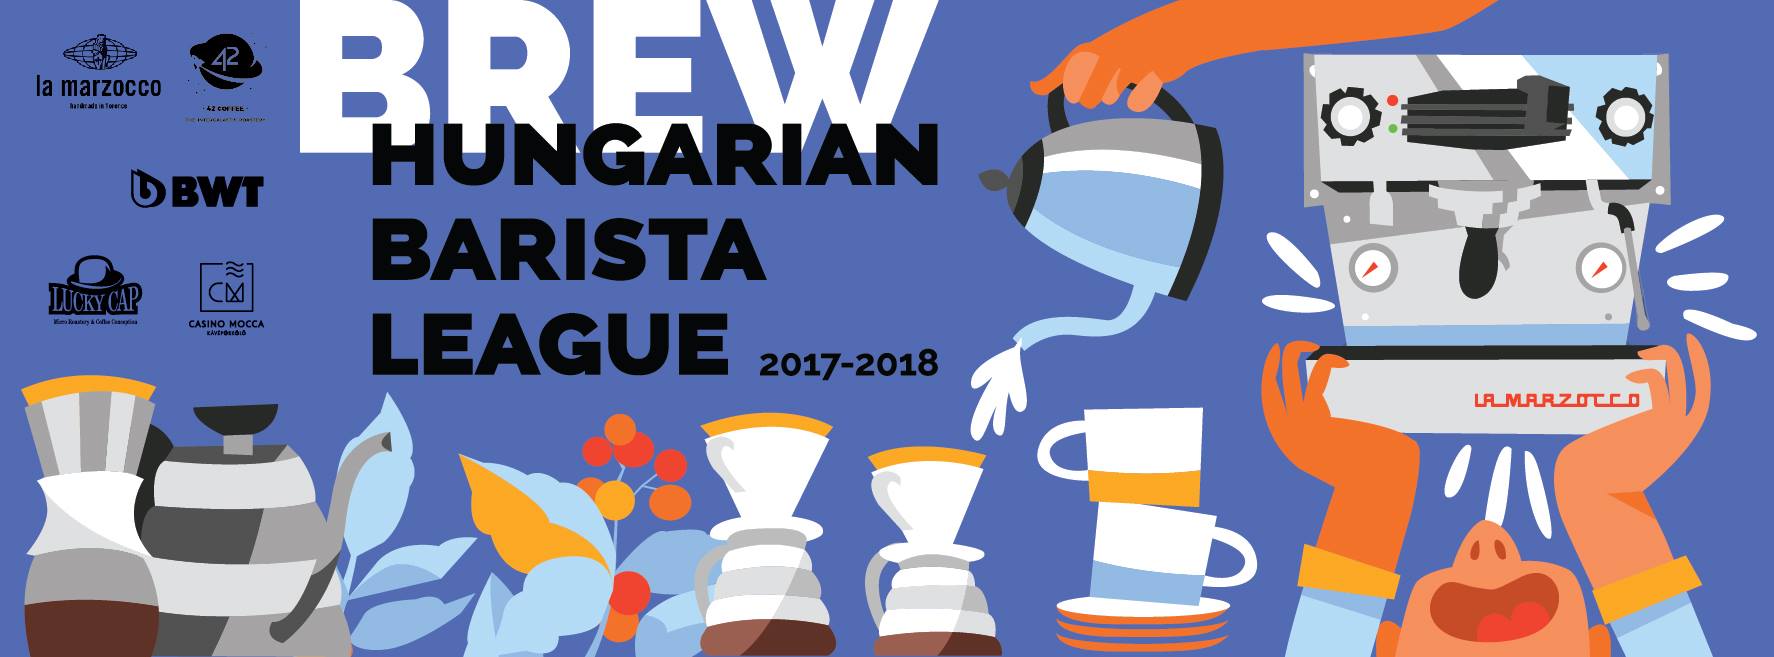 Hungarian Barista League 2017-18